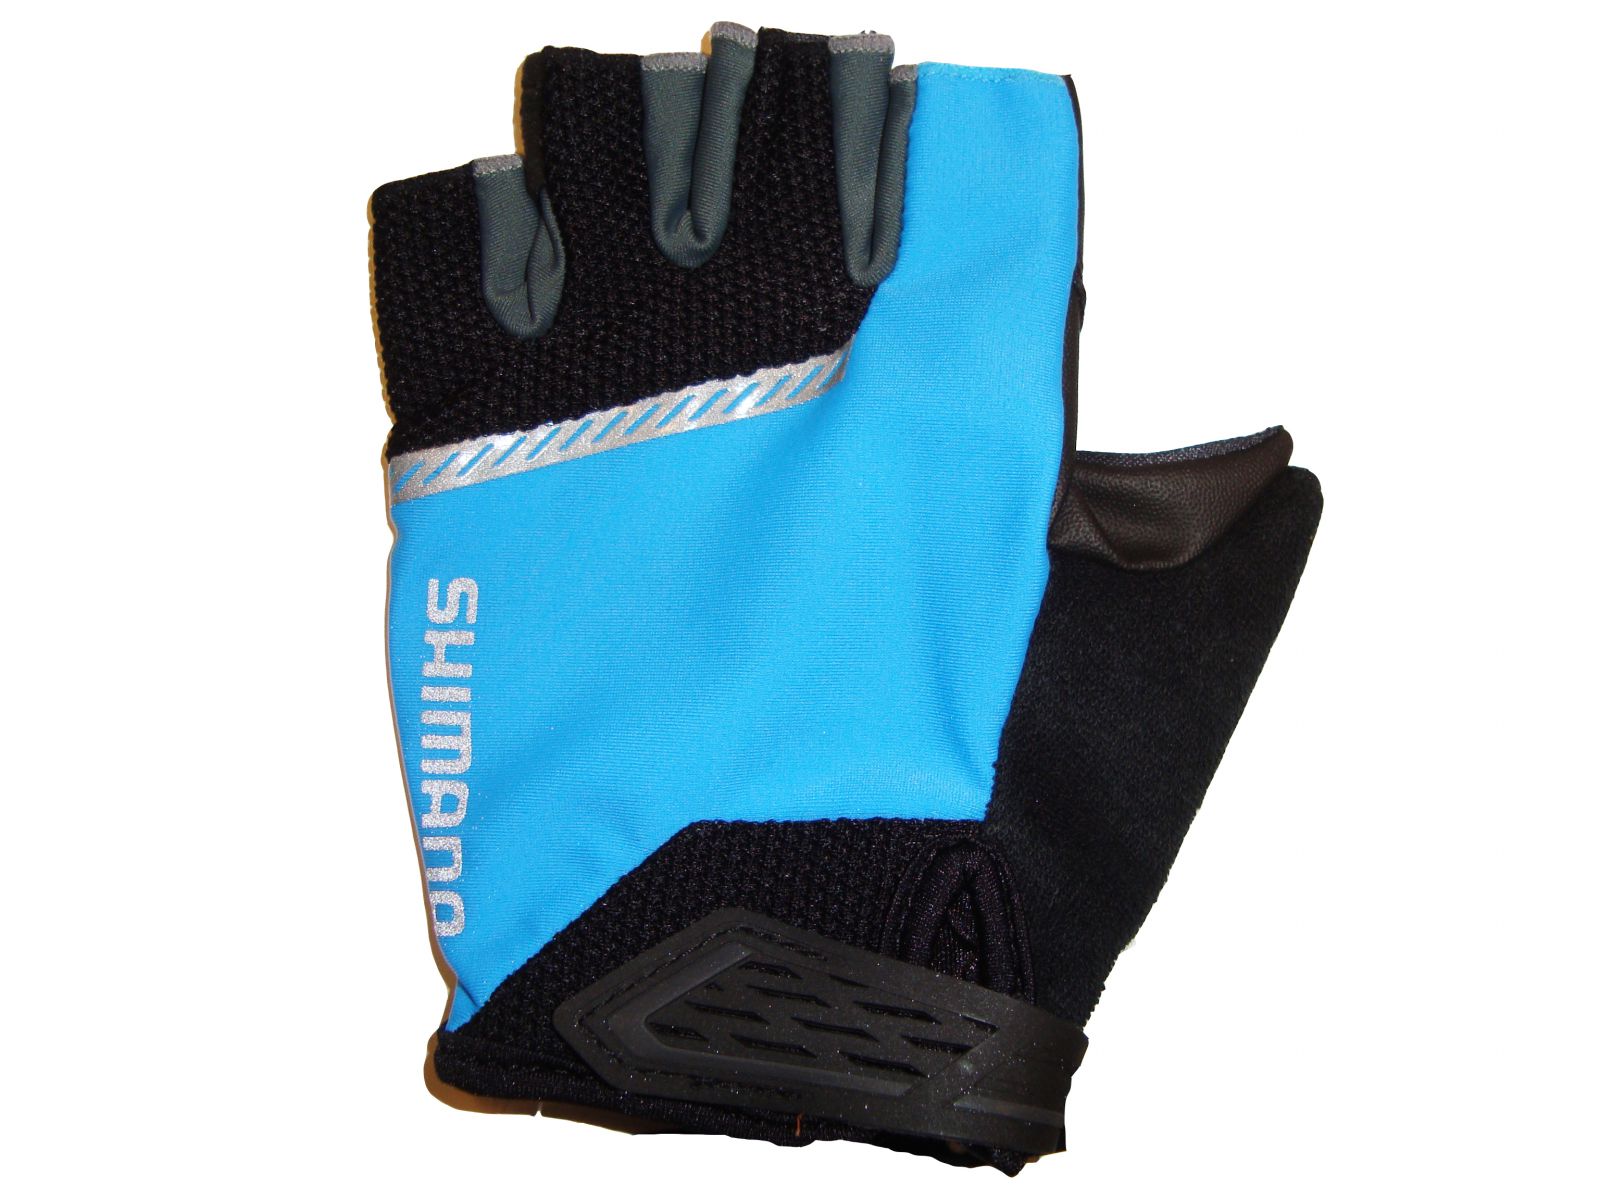 SHIMANO Original rukavice, černá/modrá, L